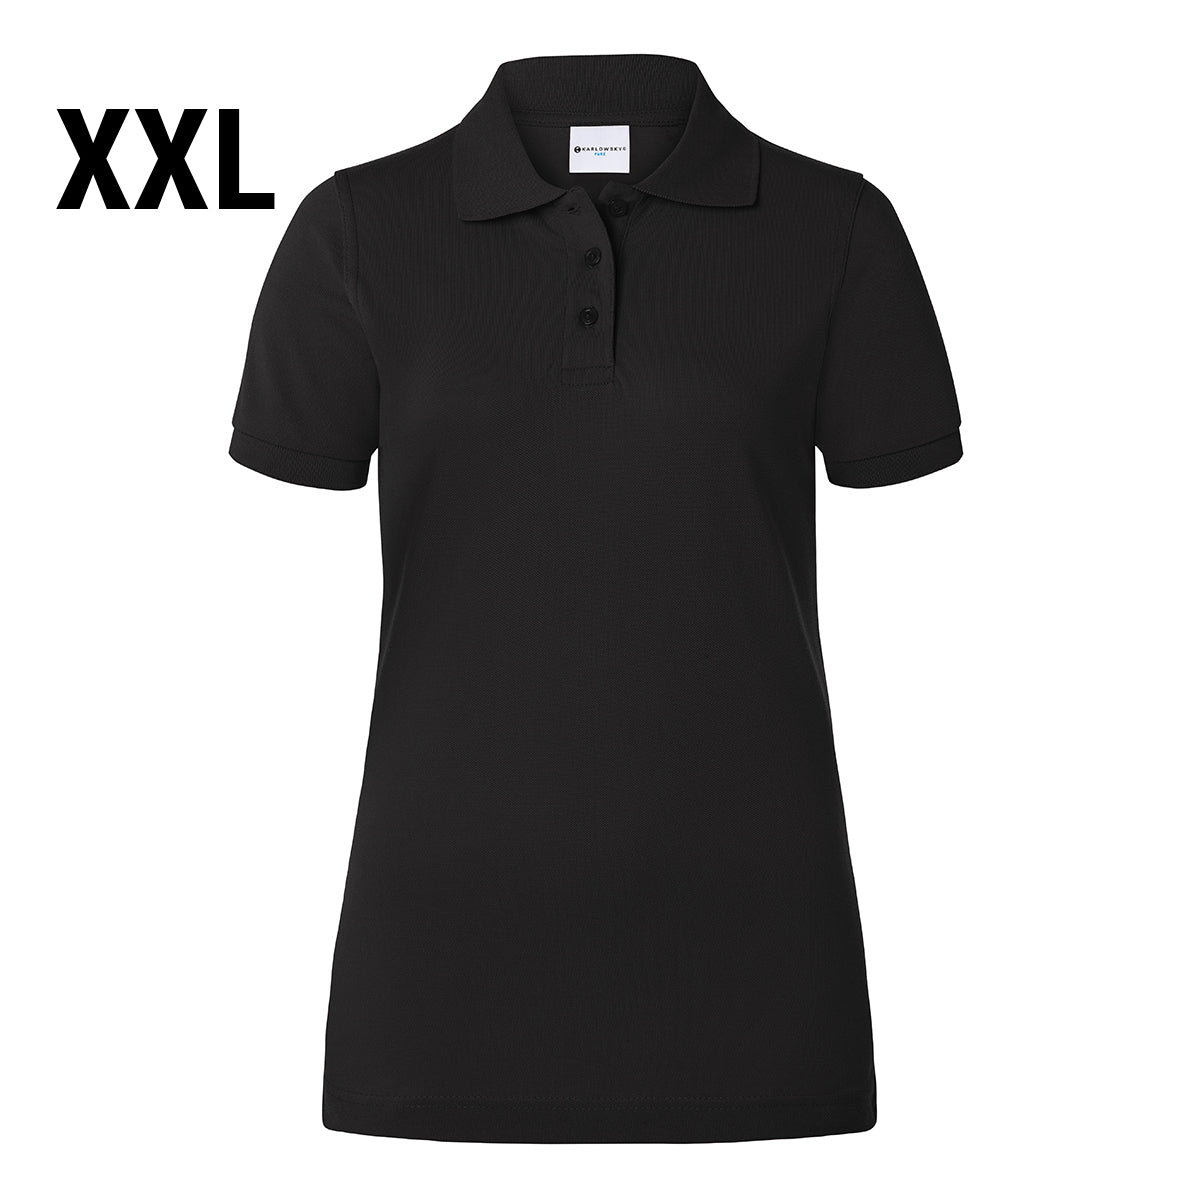 Karlowsky - Arbejdsbeklædning Basic Poloshirt til damer - Sort - Størrelse: 2XL